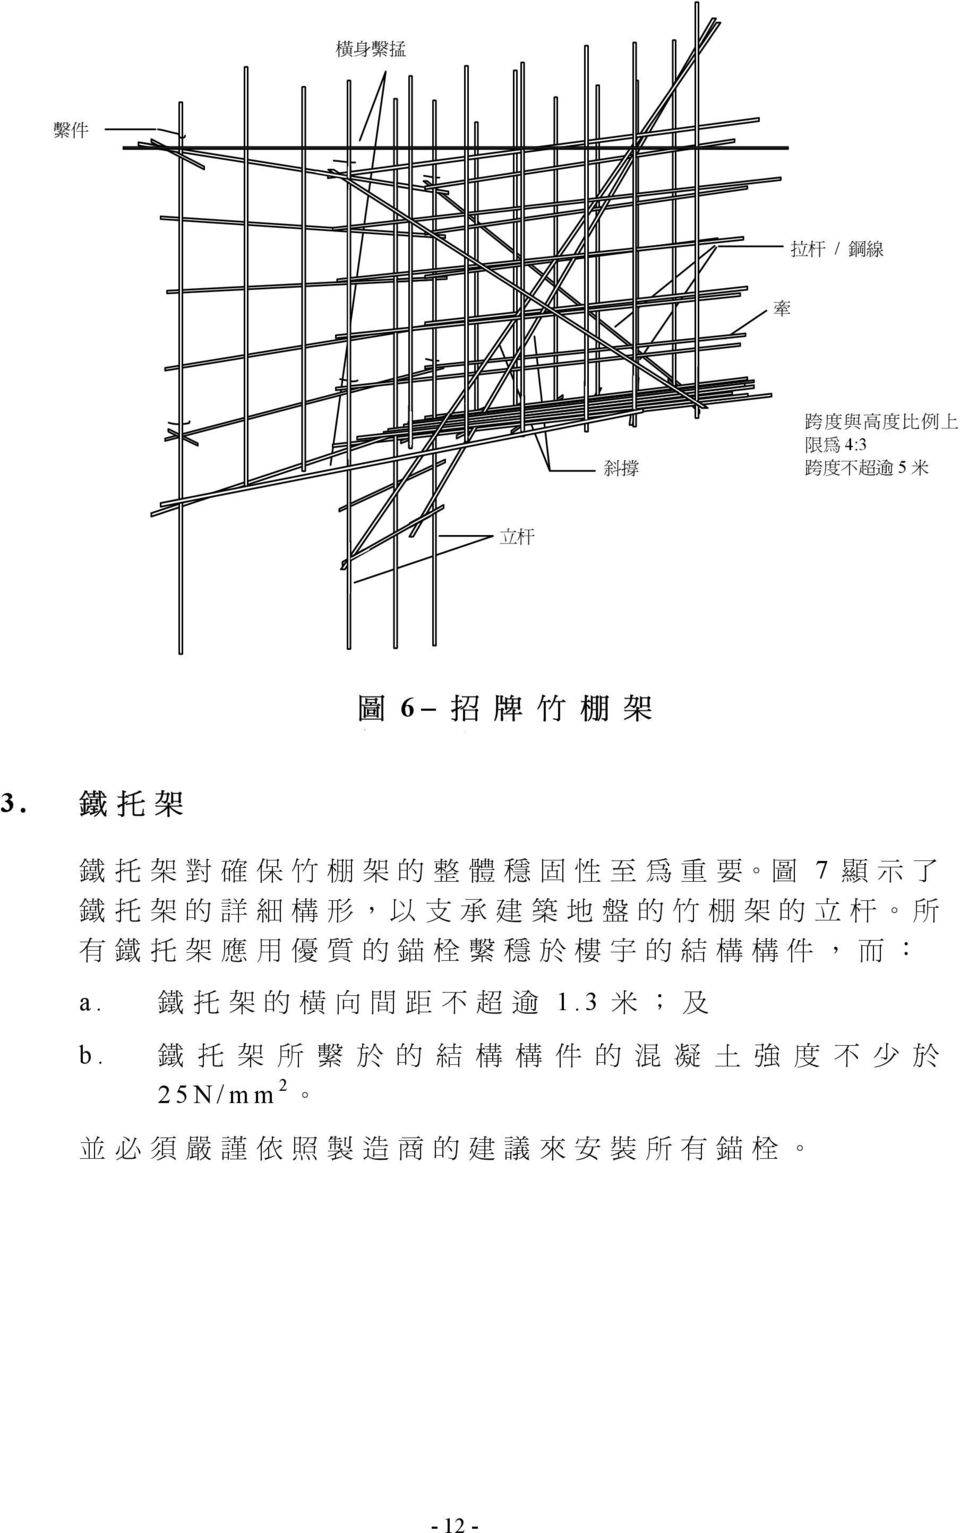 架 的 立 杆 所 有 鐵 托 架 應 用 優 質 的 錨 栓 繫 穩 於 樓 宇 的 結 構 構 件, 而 : a. 鐵 托 架 的 橫 向 間 距 不 超 逾 1.